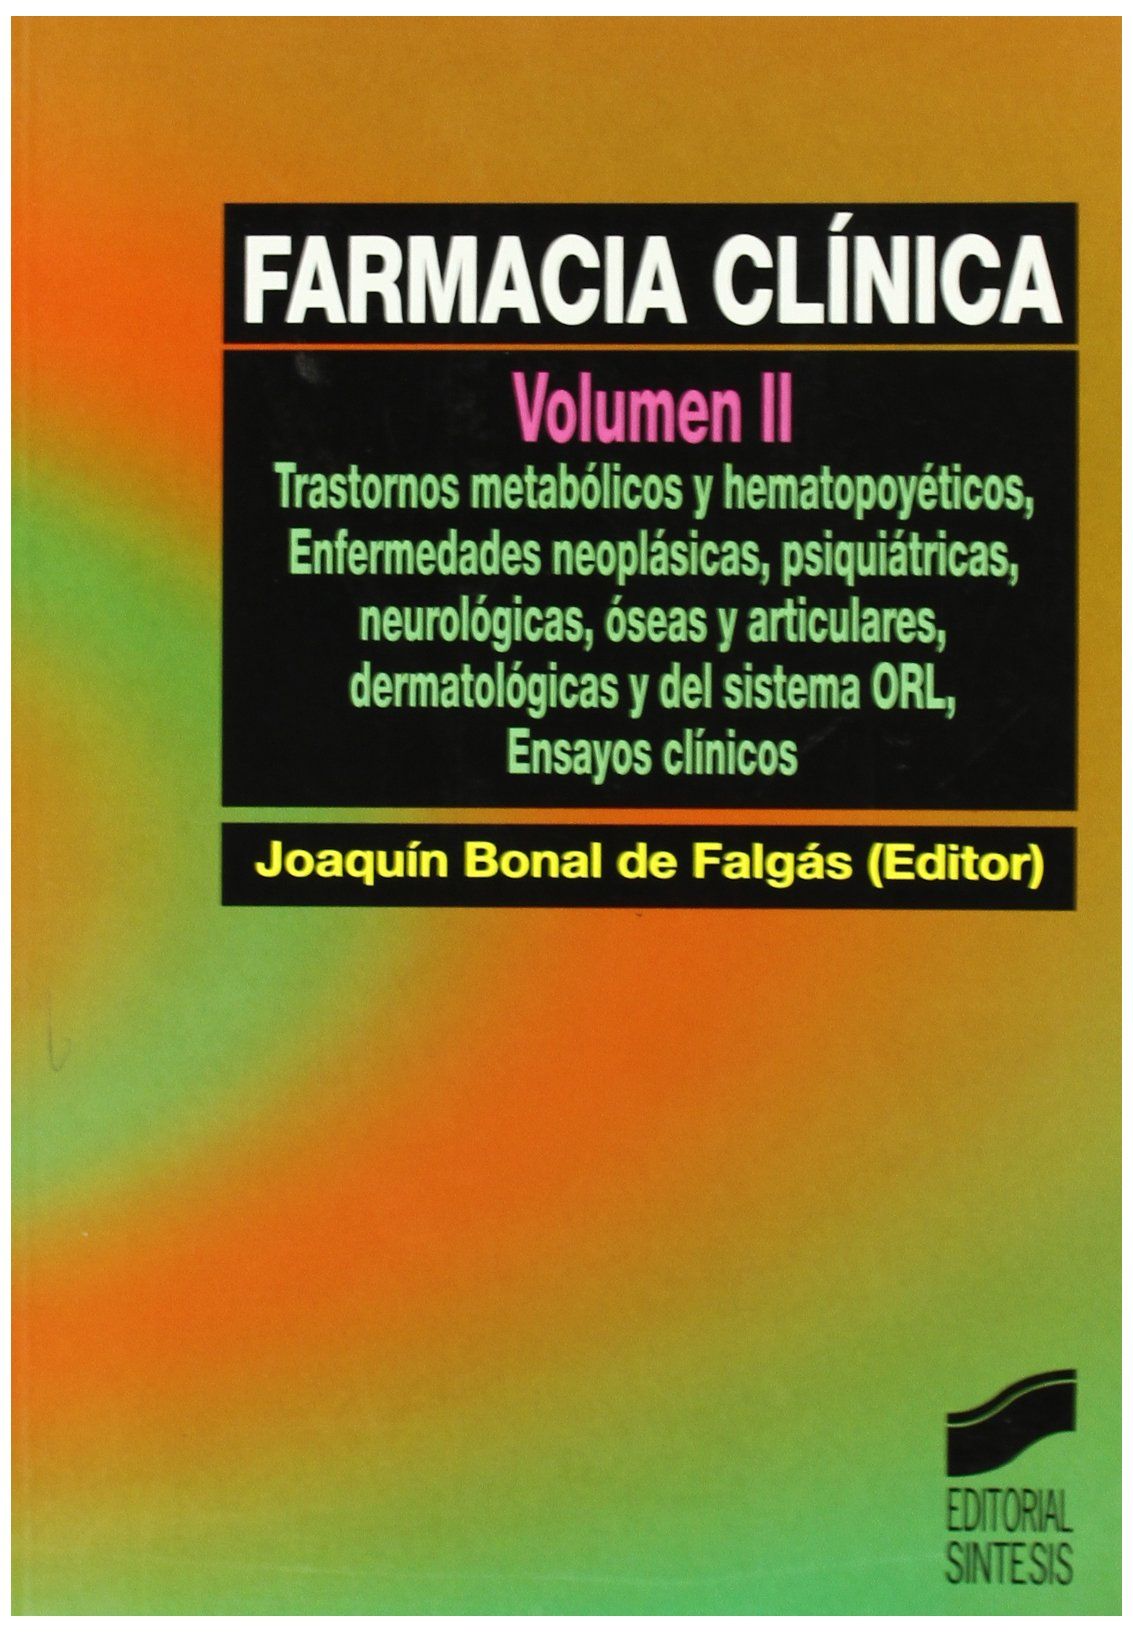 Farmacia Clínica (Vol. II)